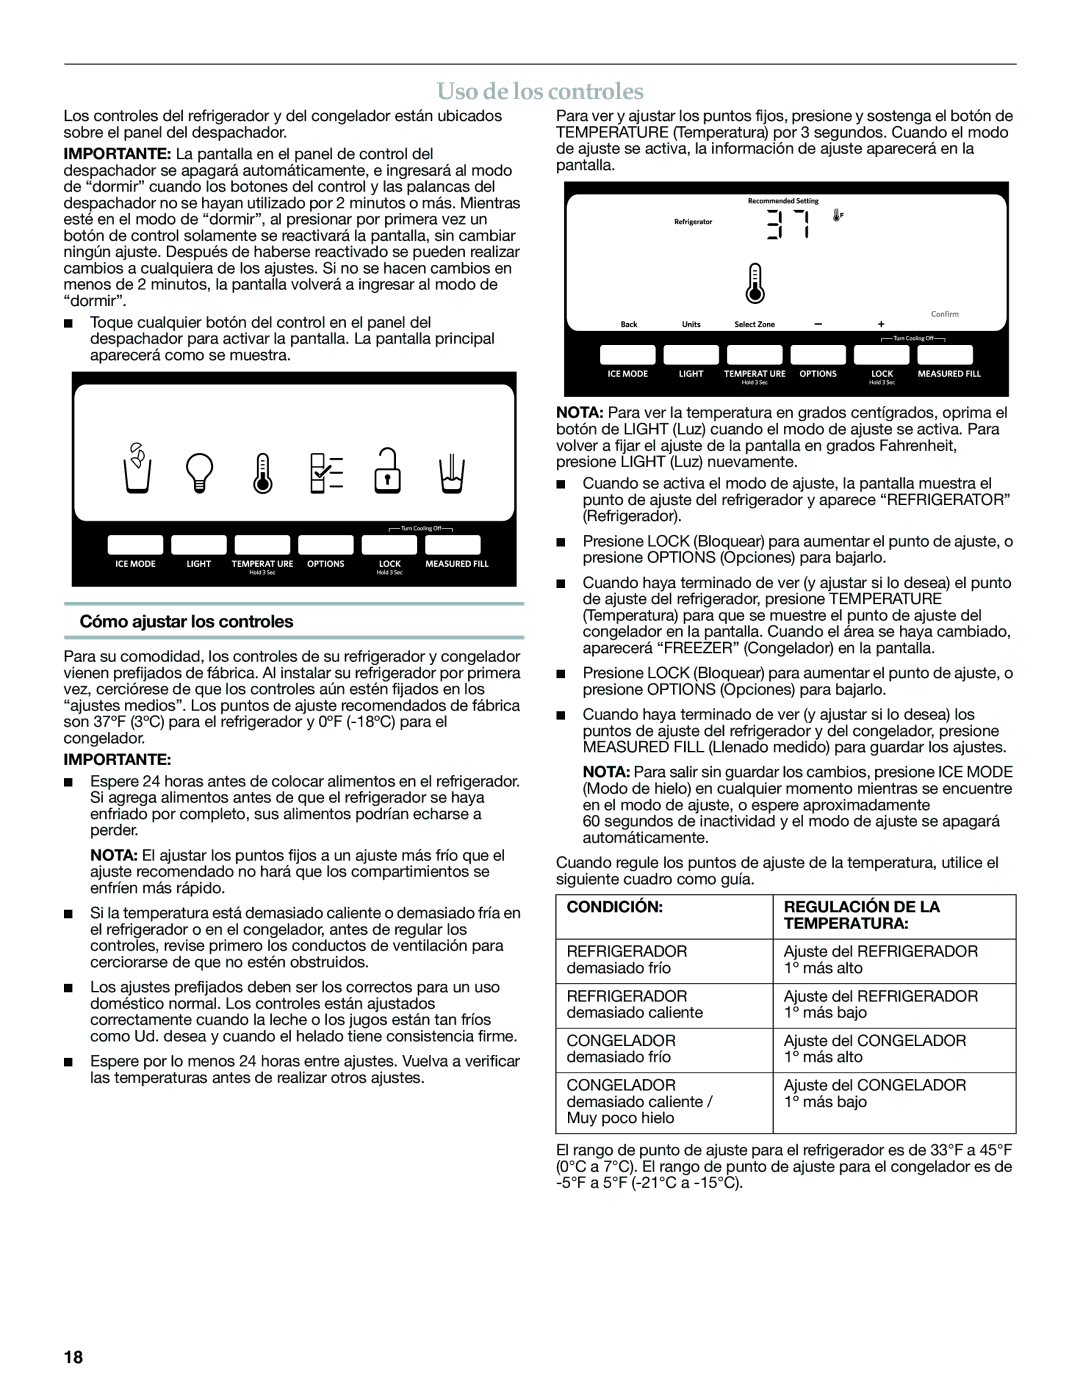 KitchenAid W10168322A Uso de los controles, Cómo ajustar los controles, Importante, Condición Regulación DE LA Temperatura 